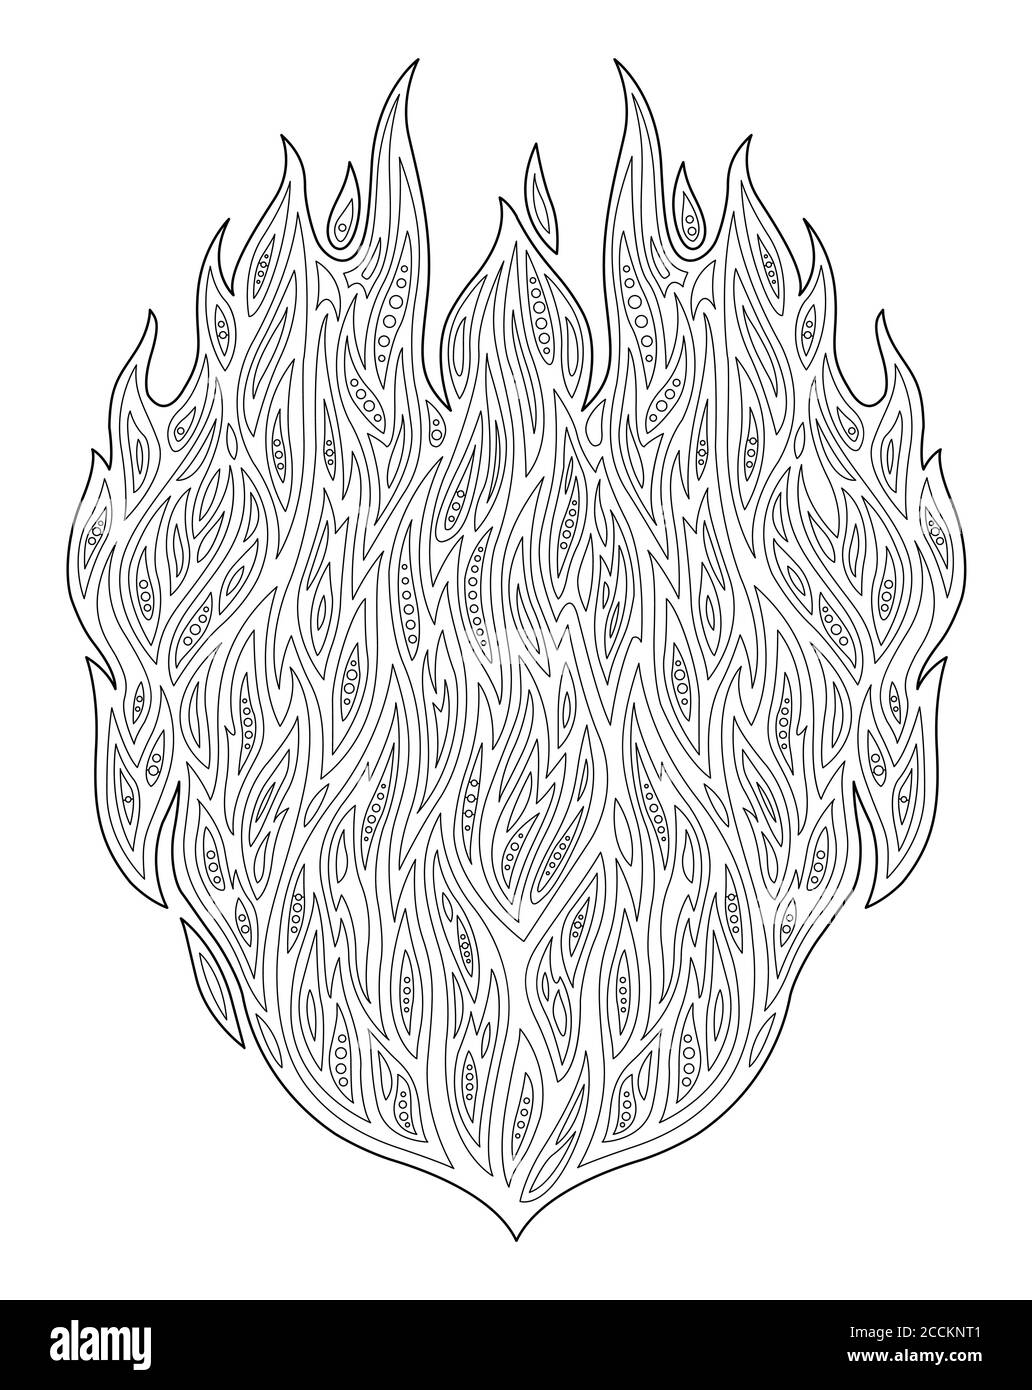 Schöne Erwachsene Malbuch Seite mit schwarz und weiß dekorativ Feuersymbol Stock Vektor